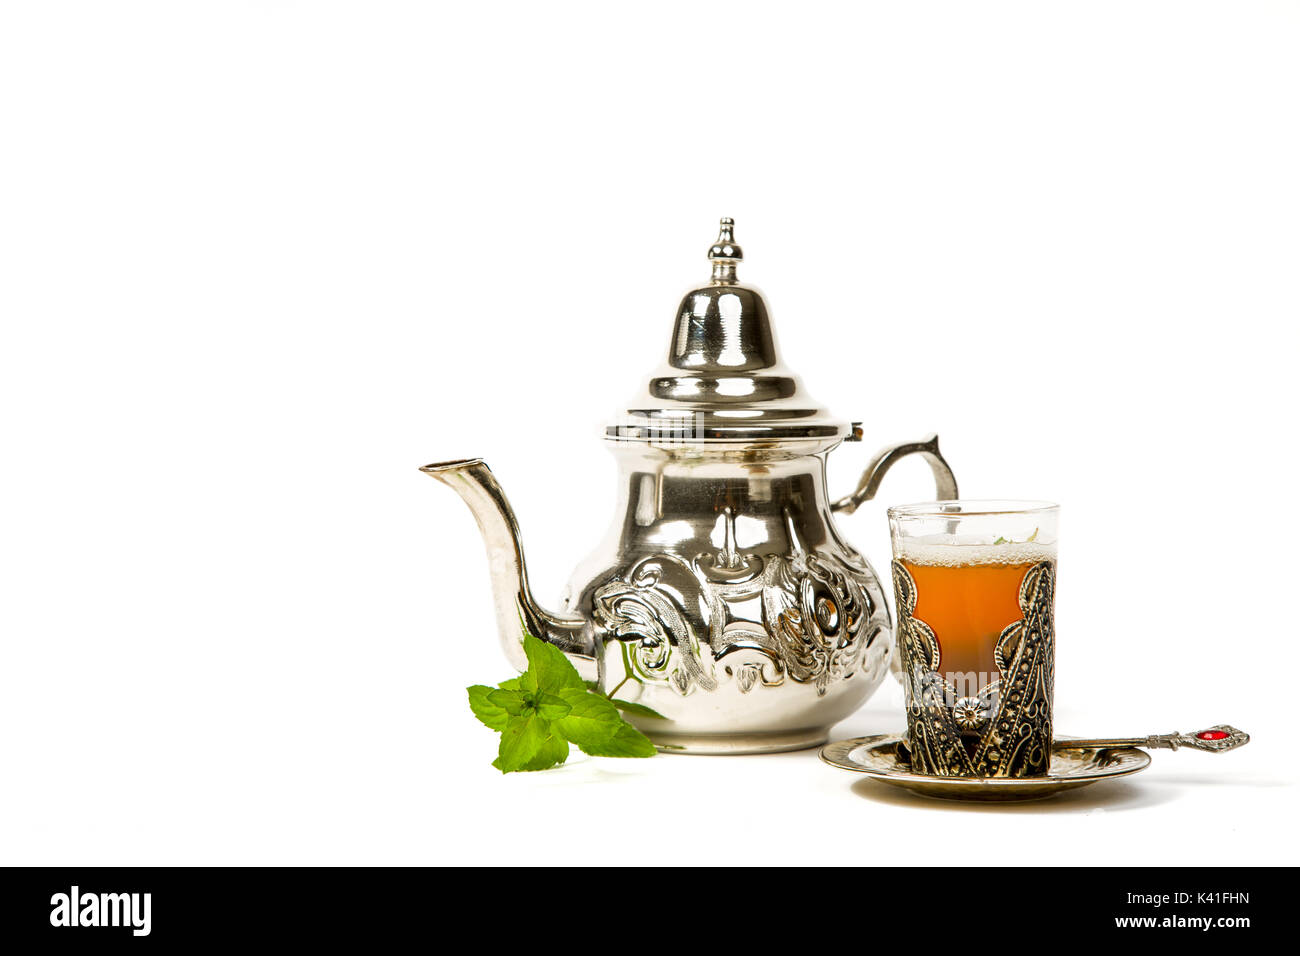 Vrai thé à la menthe marocain dans la coupe originale et une théière sur le fond blanc Banque D'Images